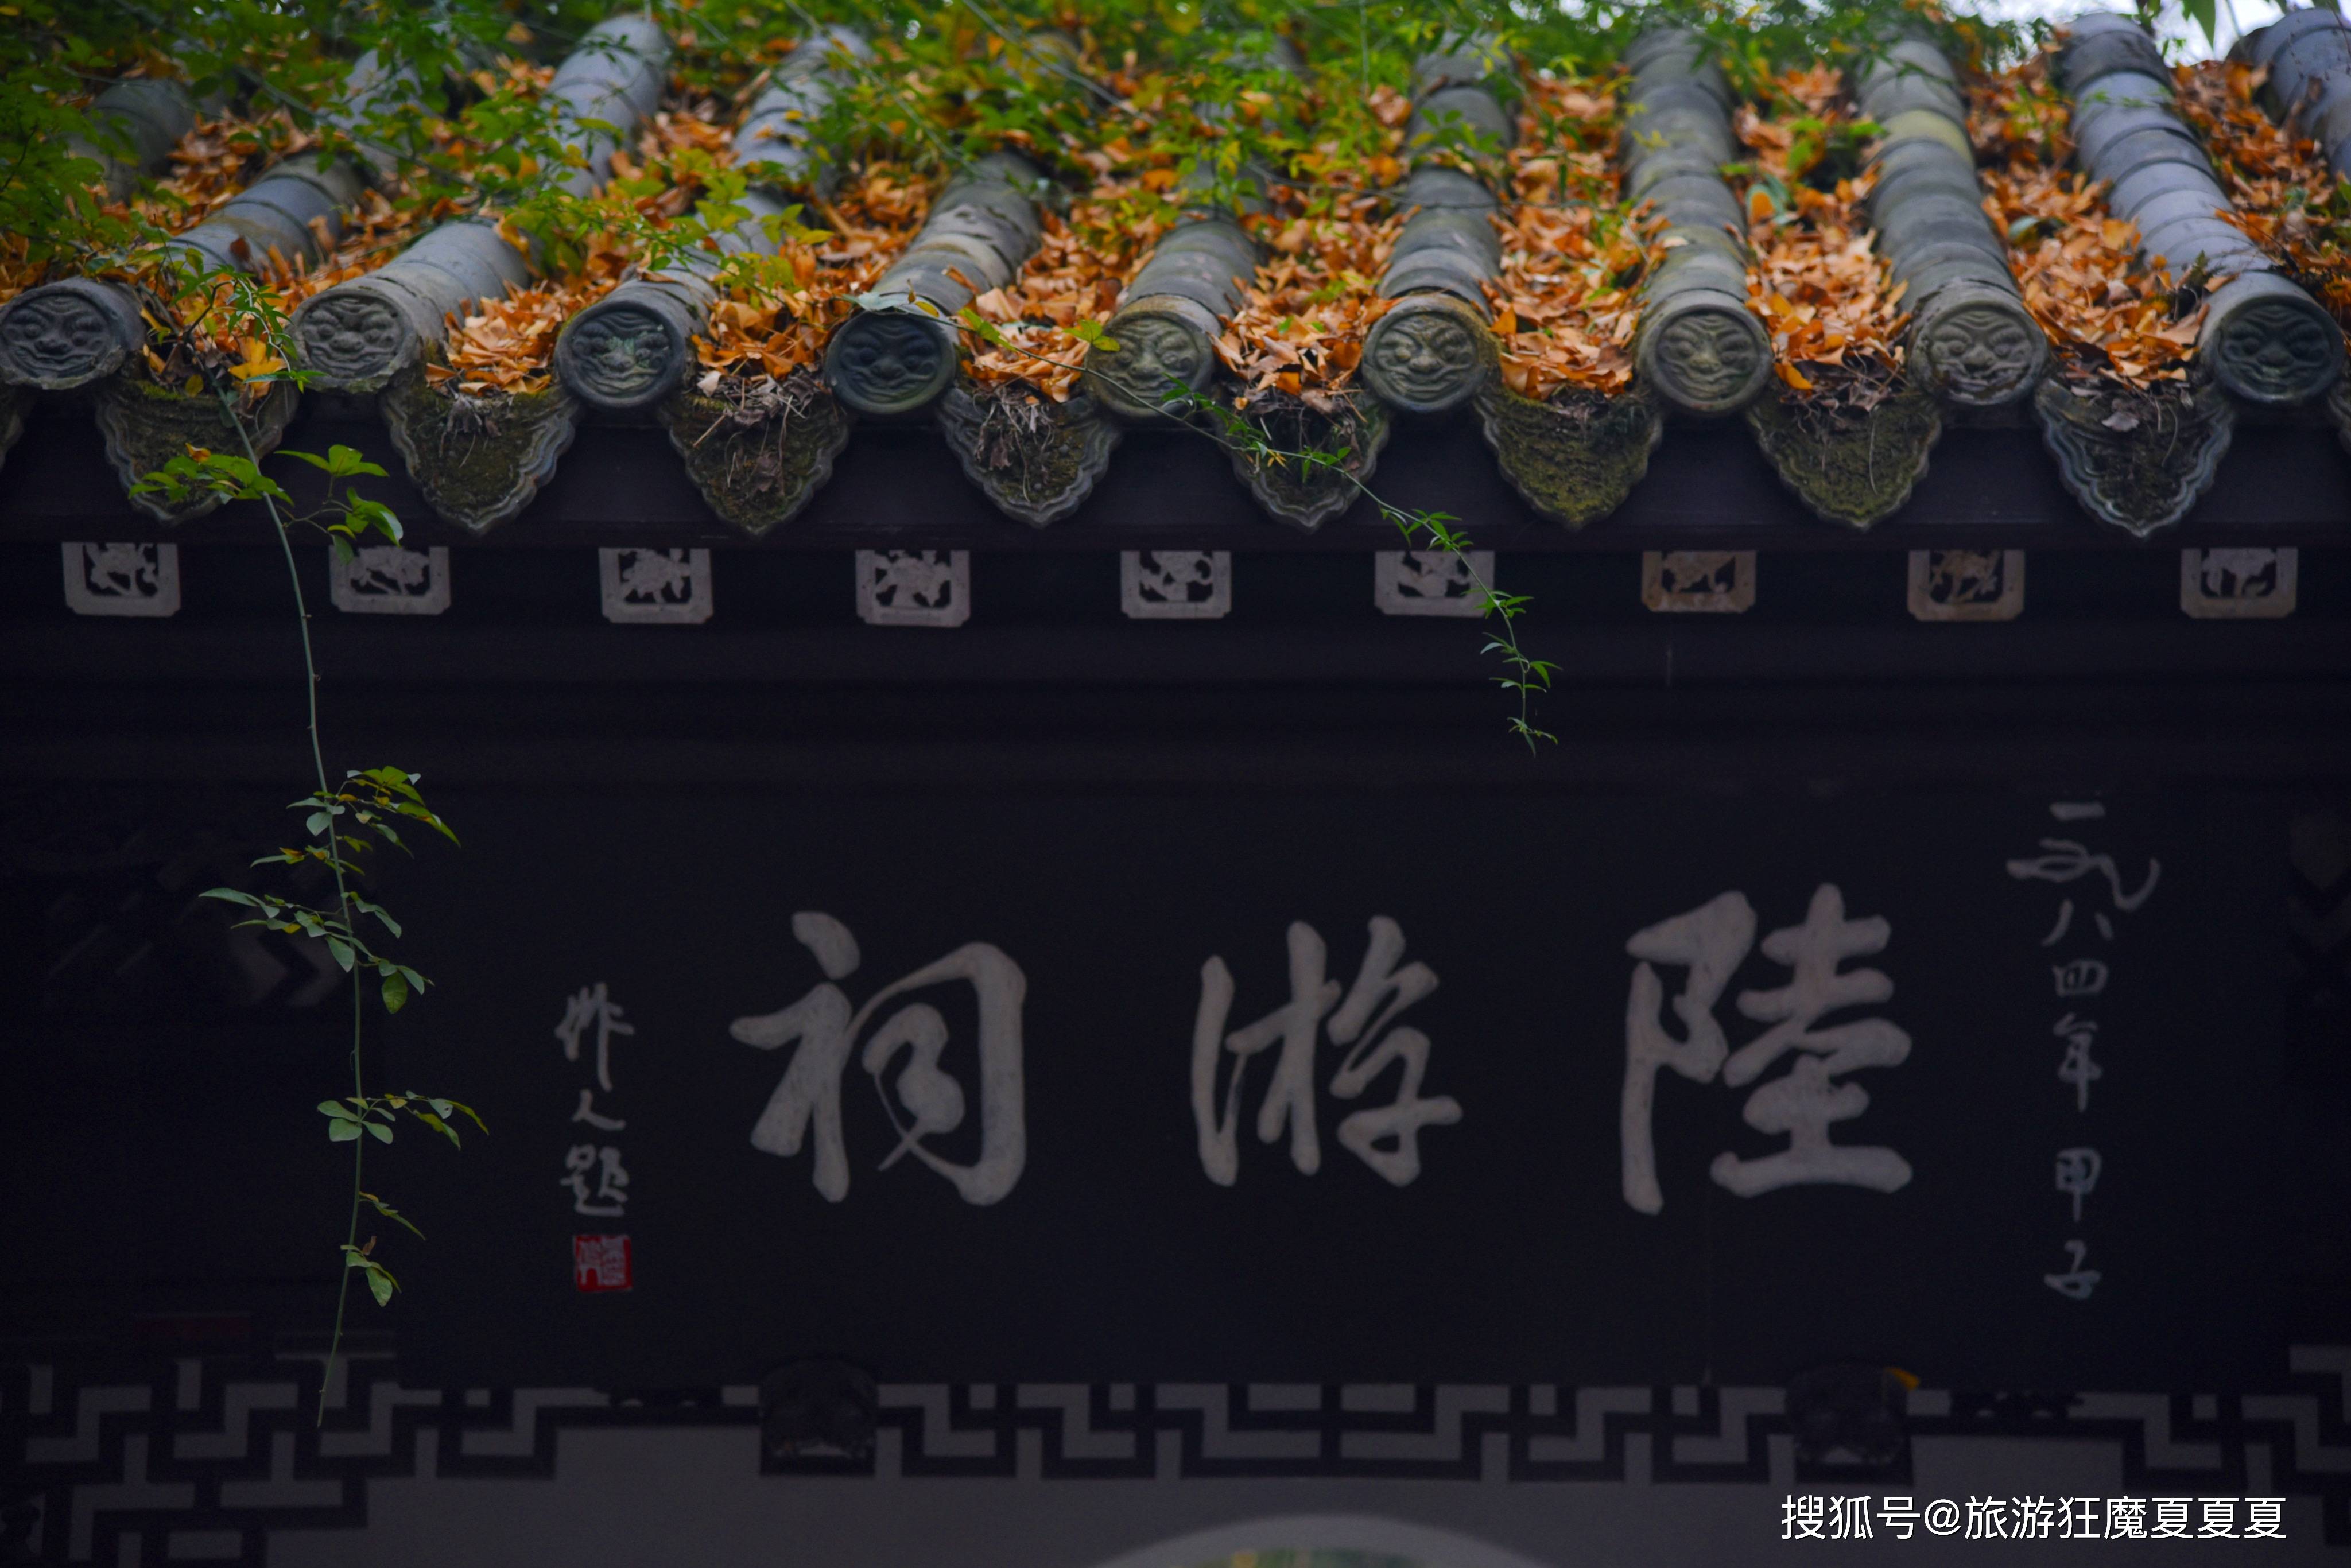 成都崇州的唐宋衙署园林，因陆游而声名远扬，价值不输苏州园林